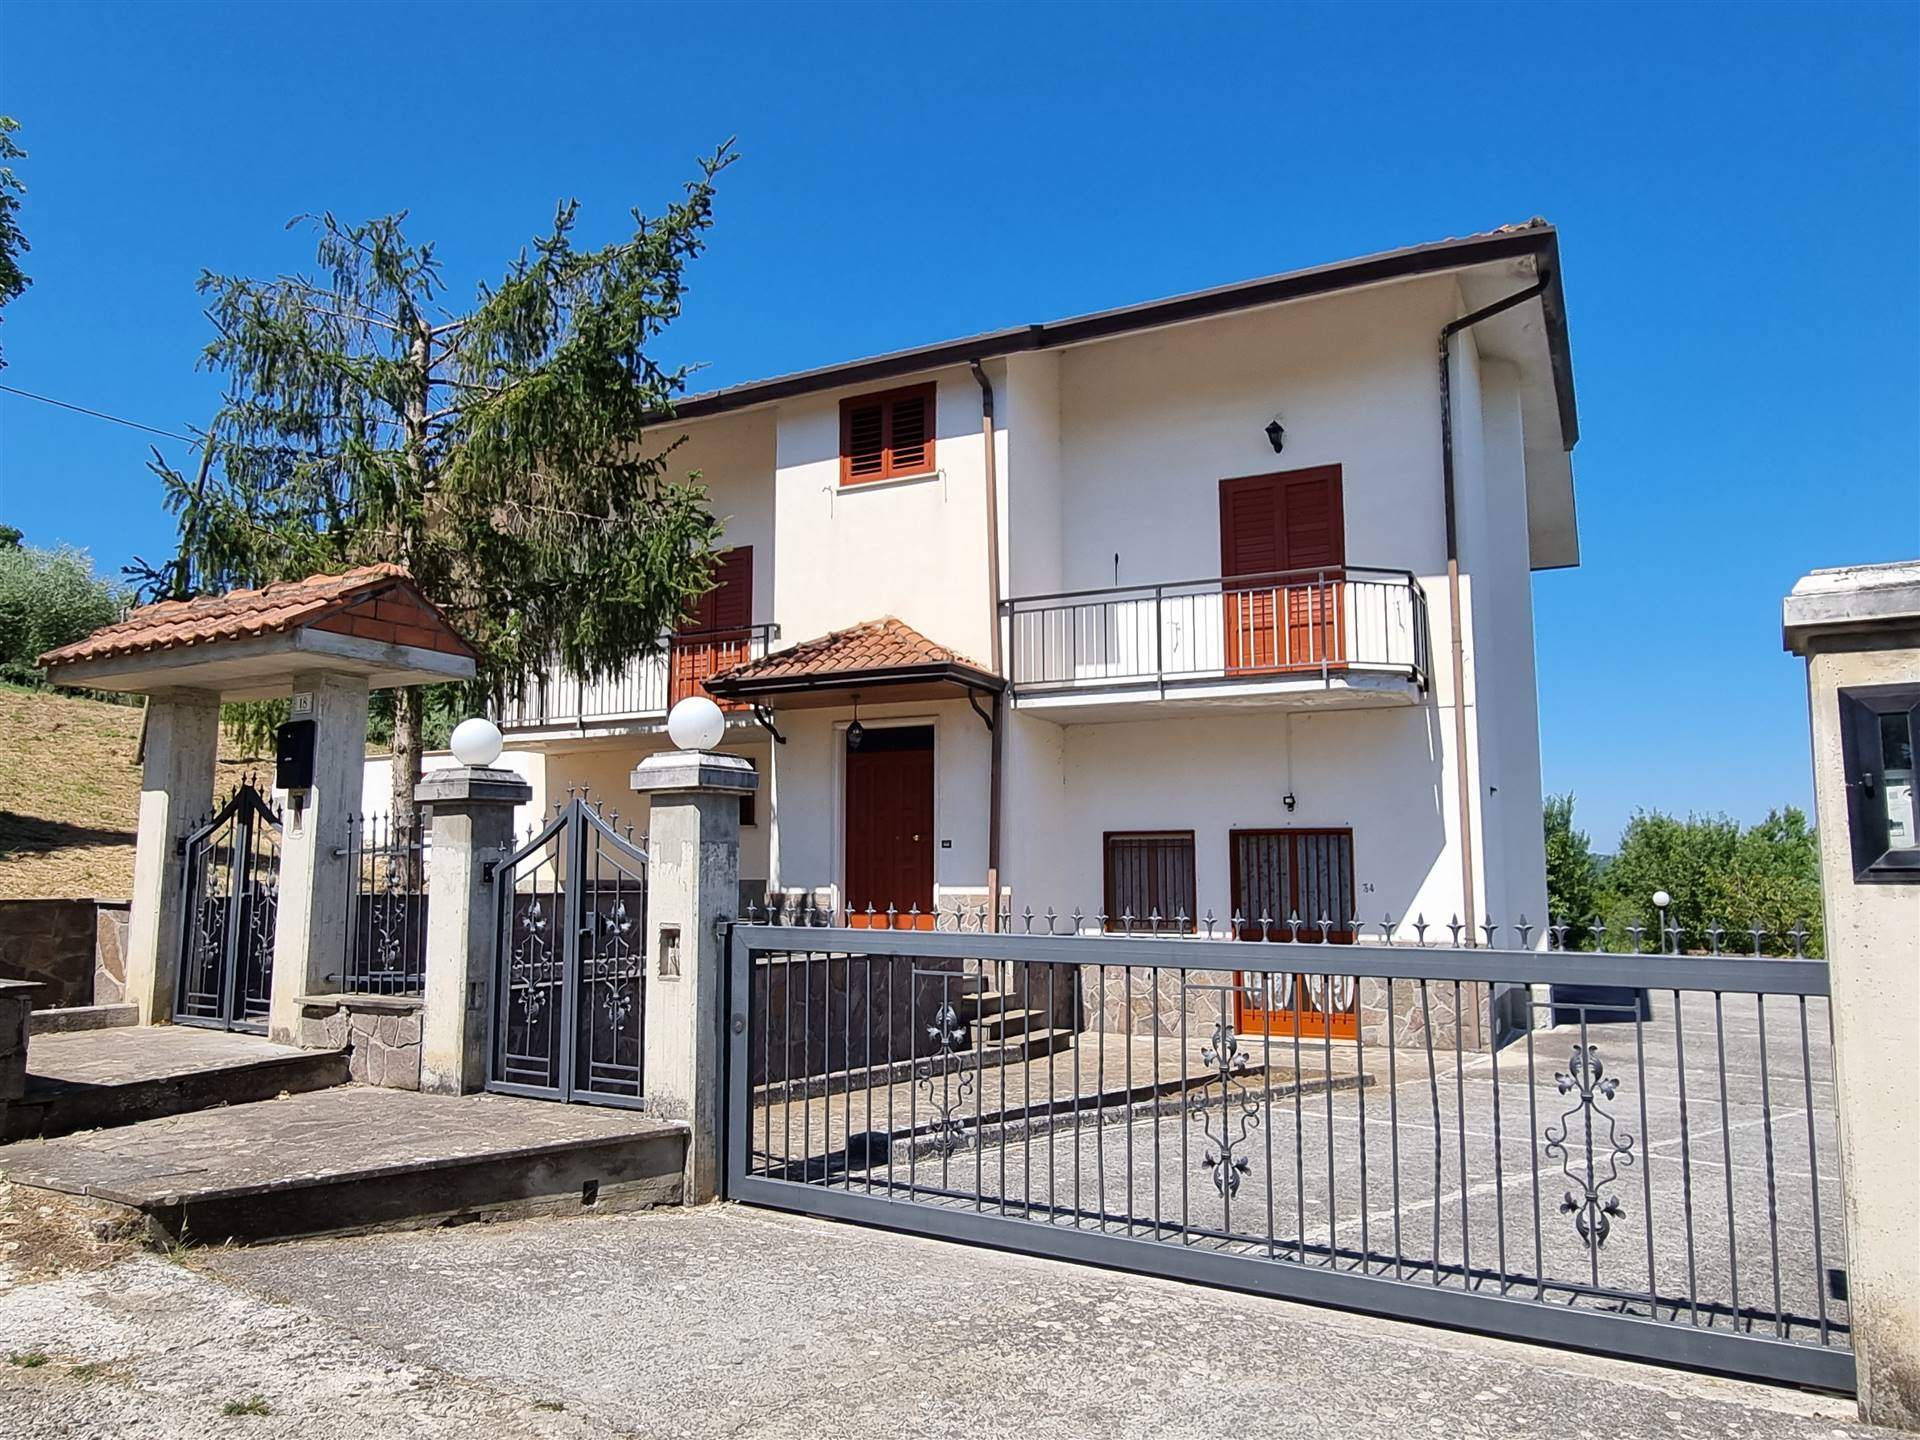 Villa in vendita a Montemarano, 5 locali, prezzo € 115.000 | PortaleAgenzieImmobiliari.it